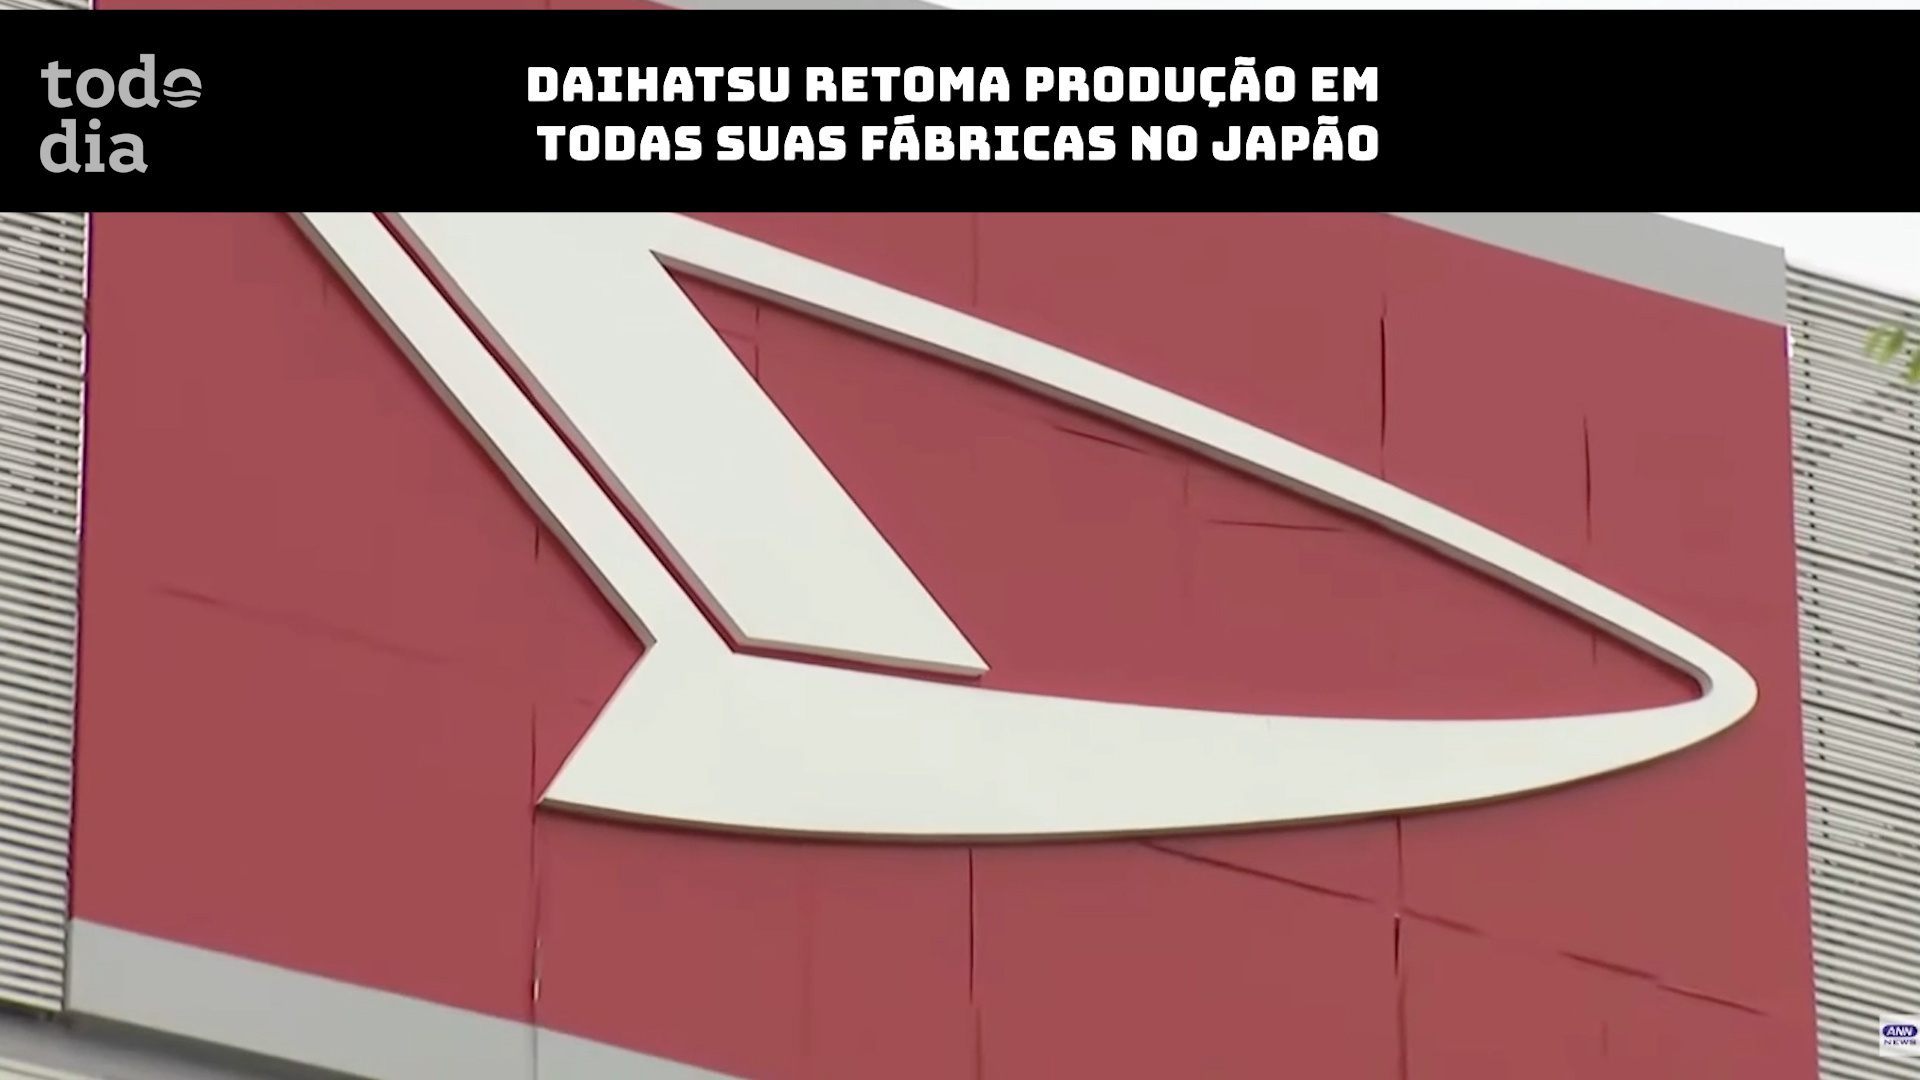 Daihatsu retoma produção em todas suas fábricas no Japão